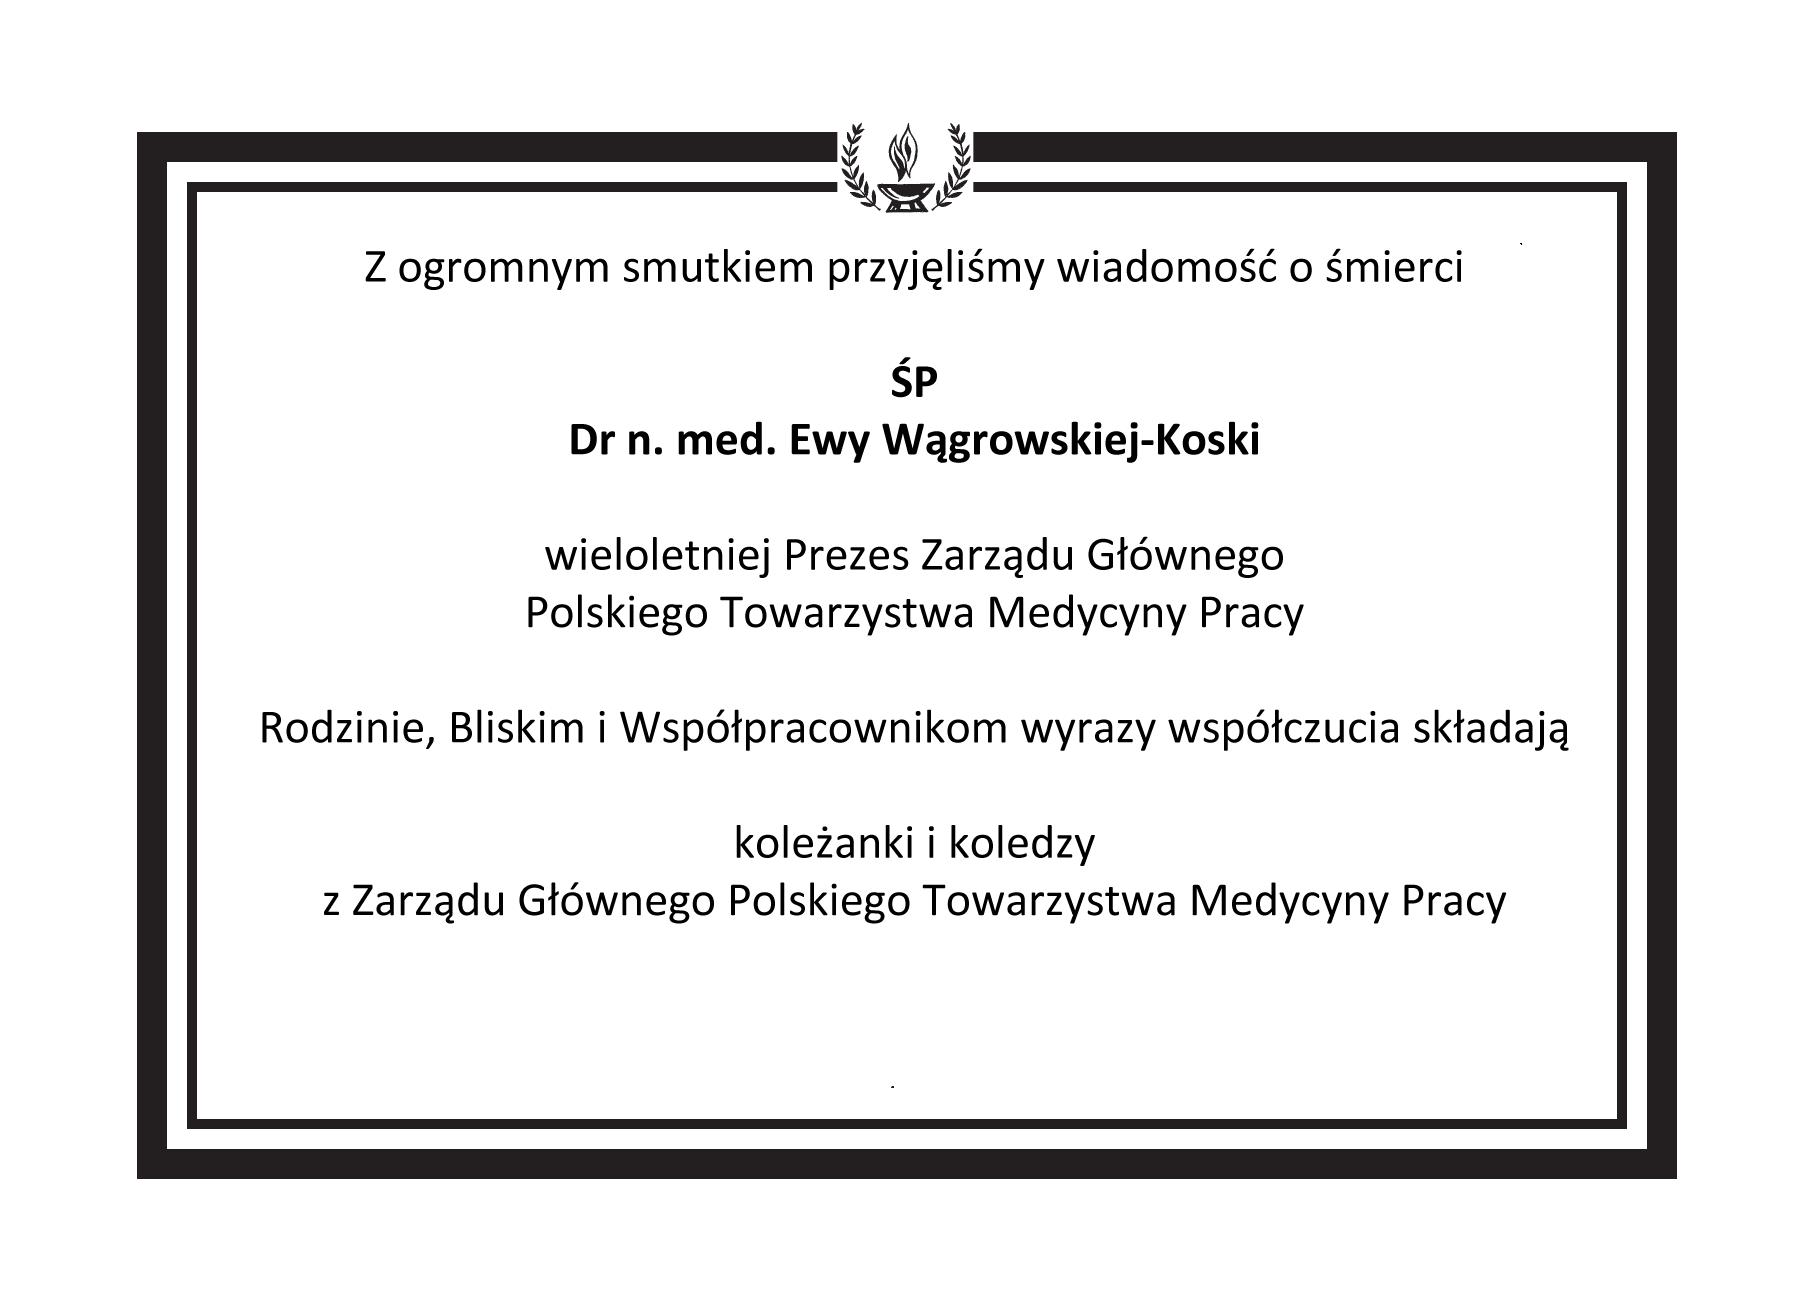 Nekrolog Śp. dr n. med. Ewy Wągrowskiej-Koski